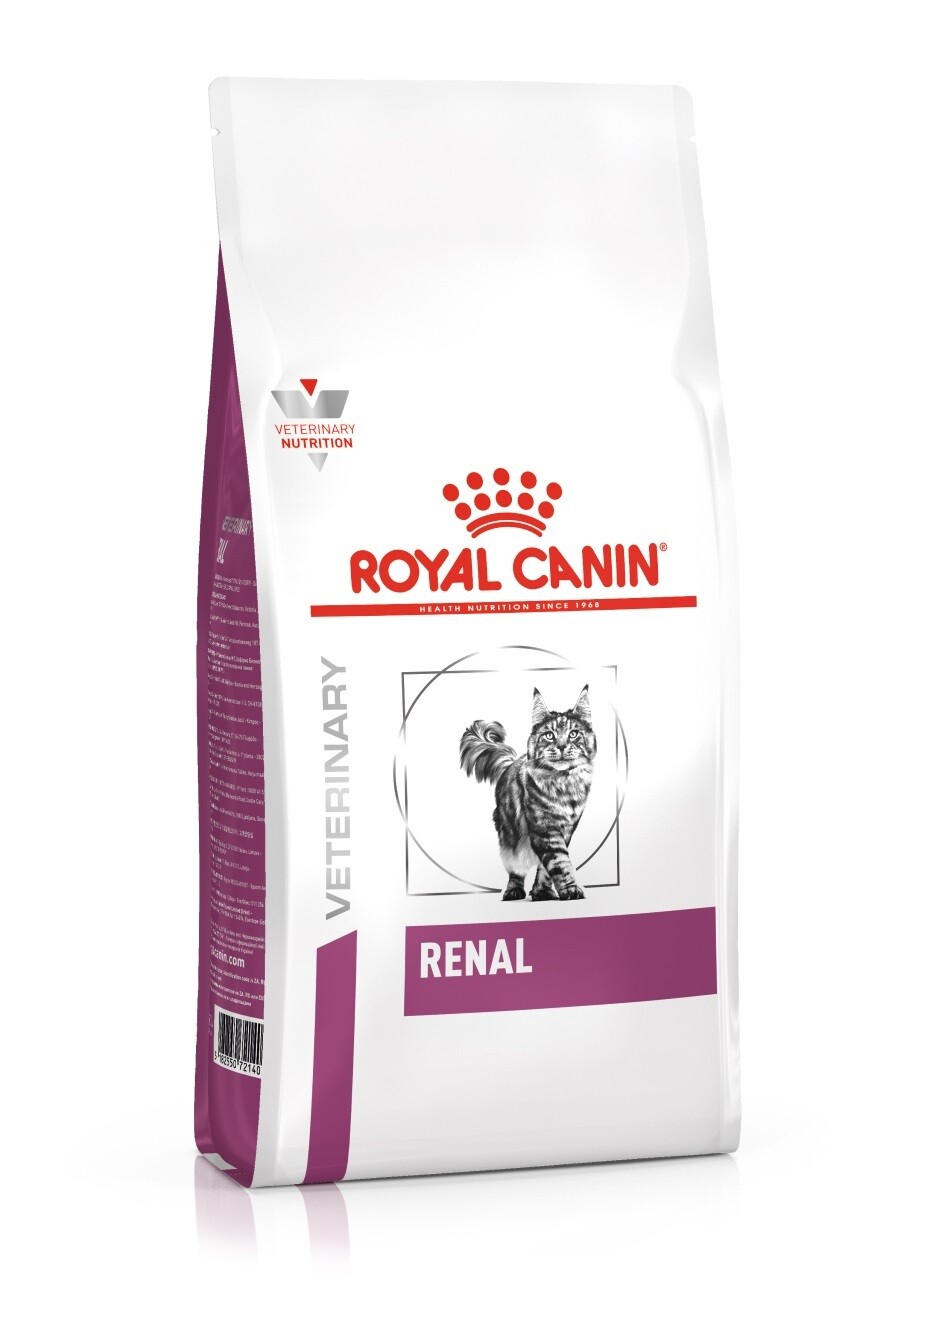 Bijna Schat Pilfer Royal Canin Renal Kat | Nierdieet voor katten